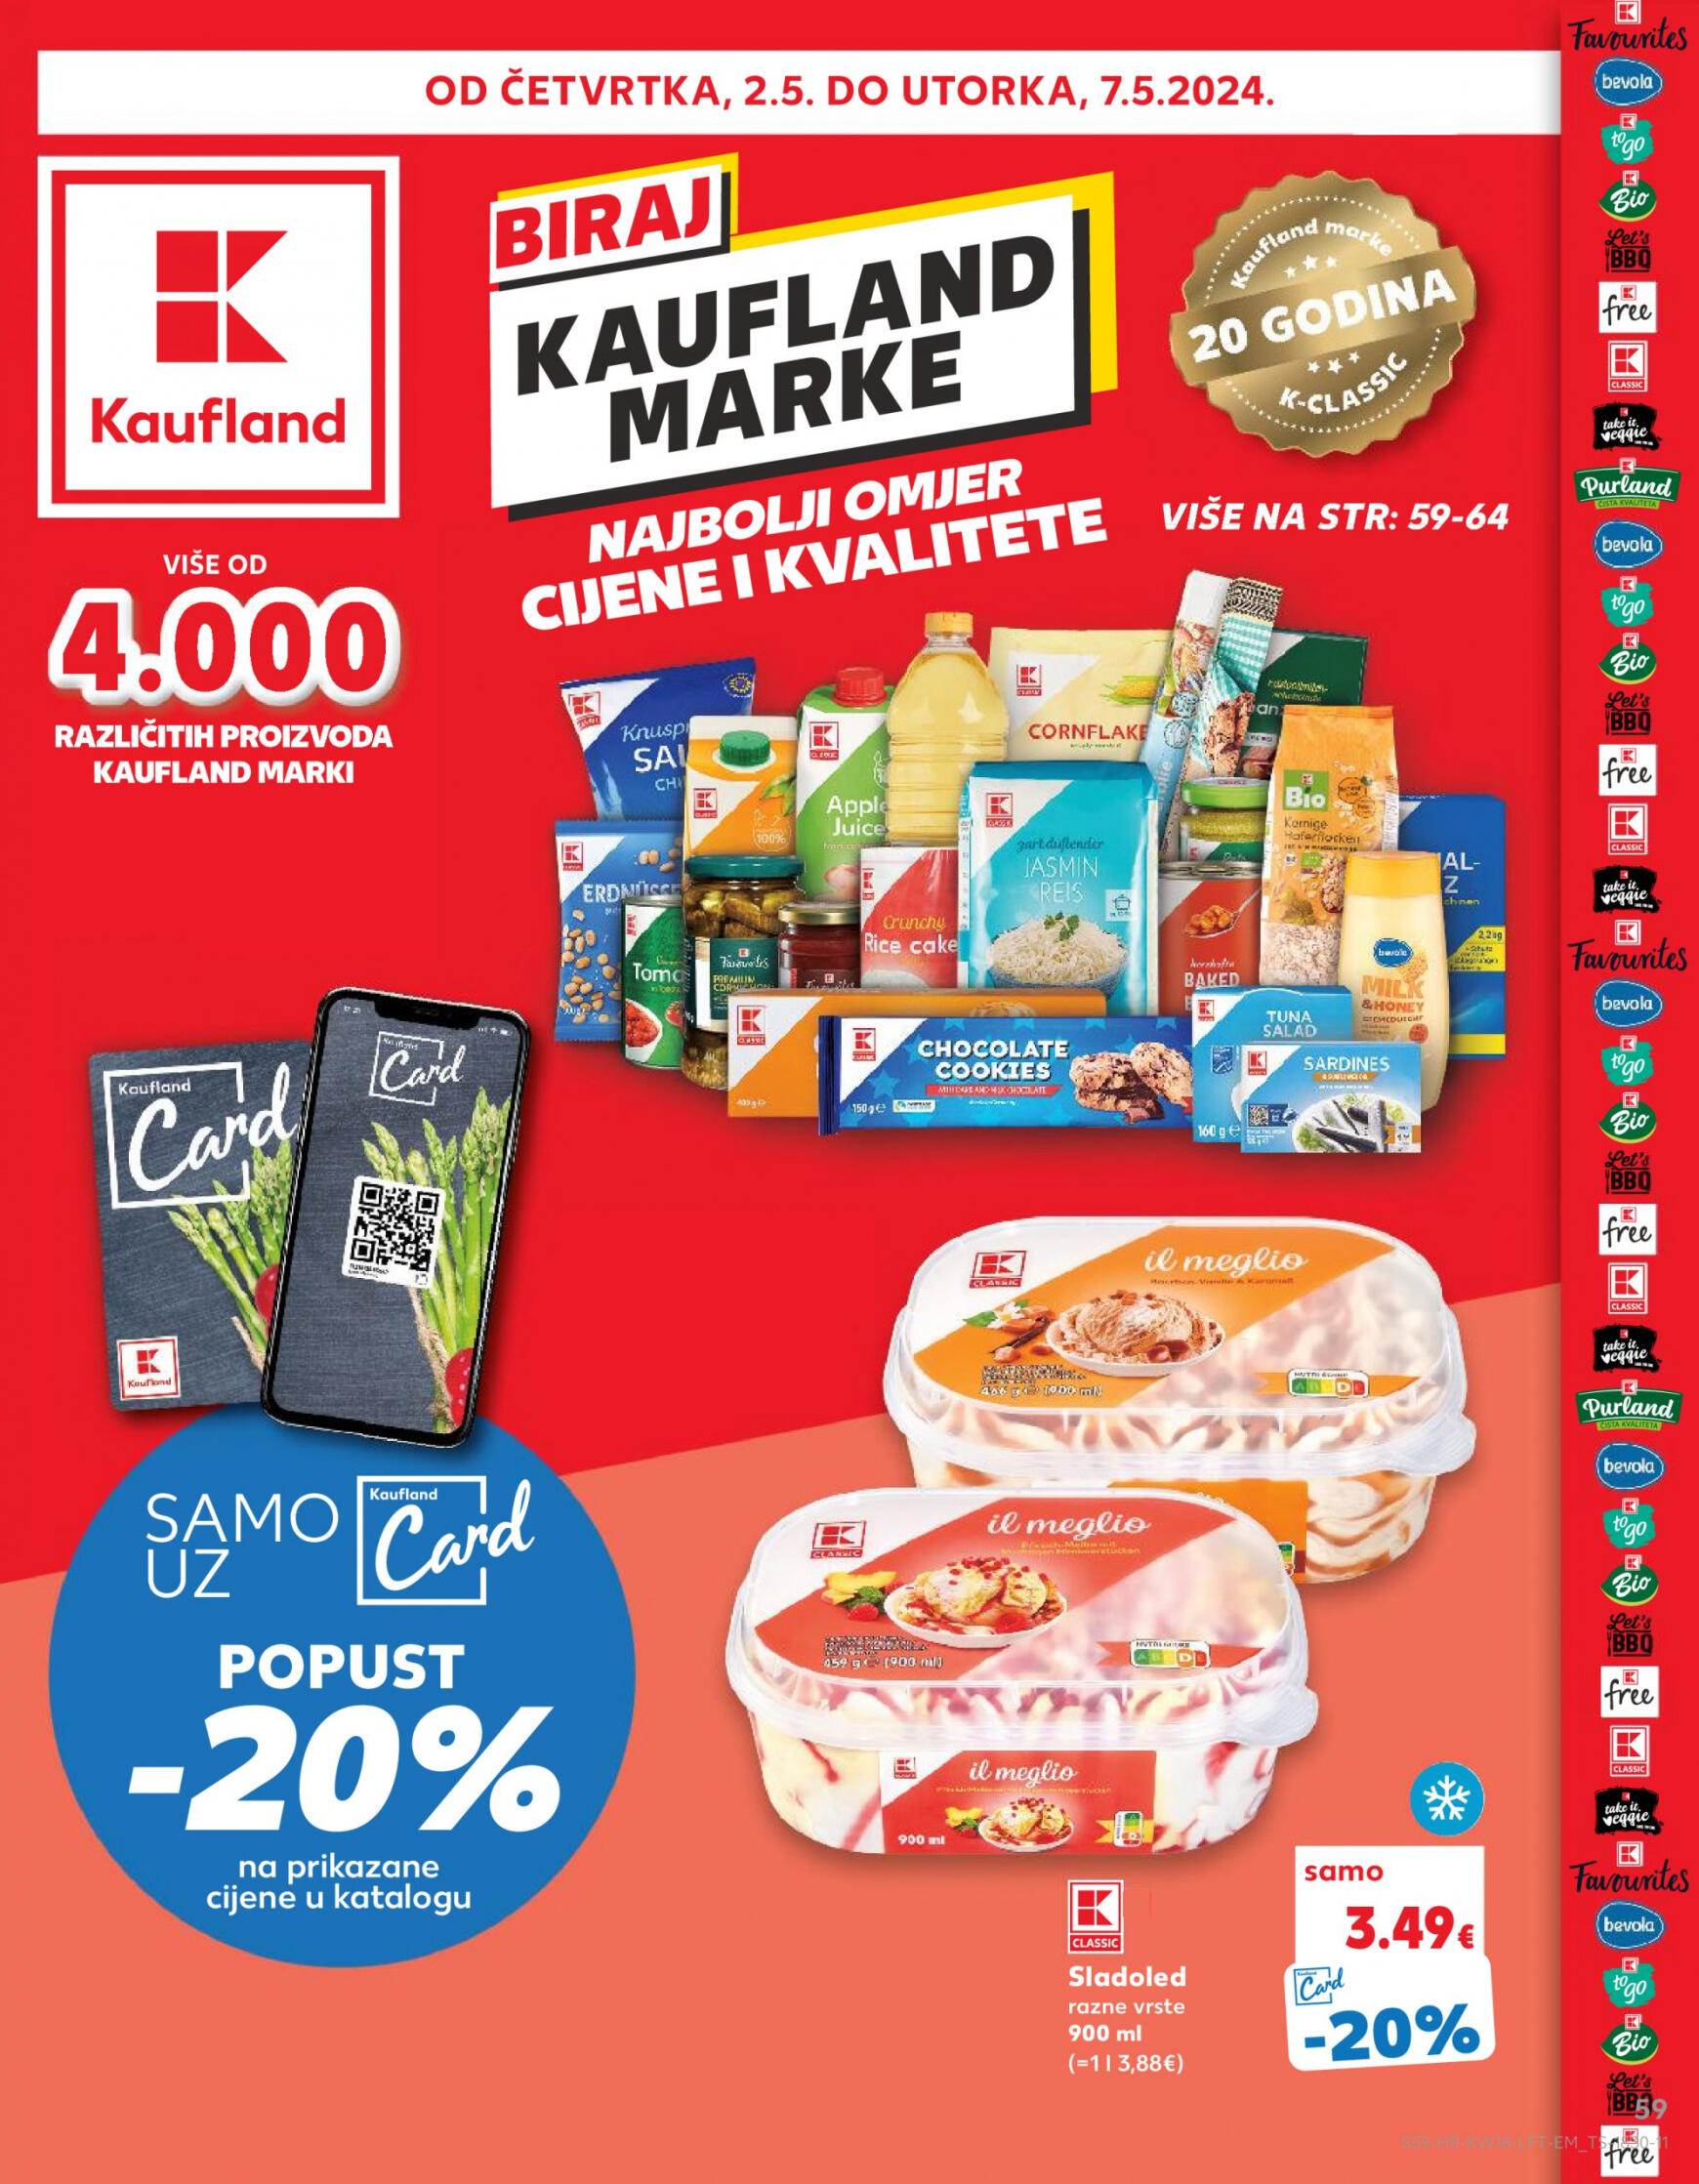 kaufland - Novi katalog Kaufland 02.05. - 07.05. - page: 59